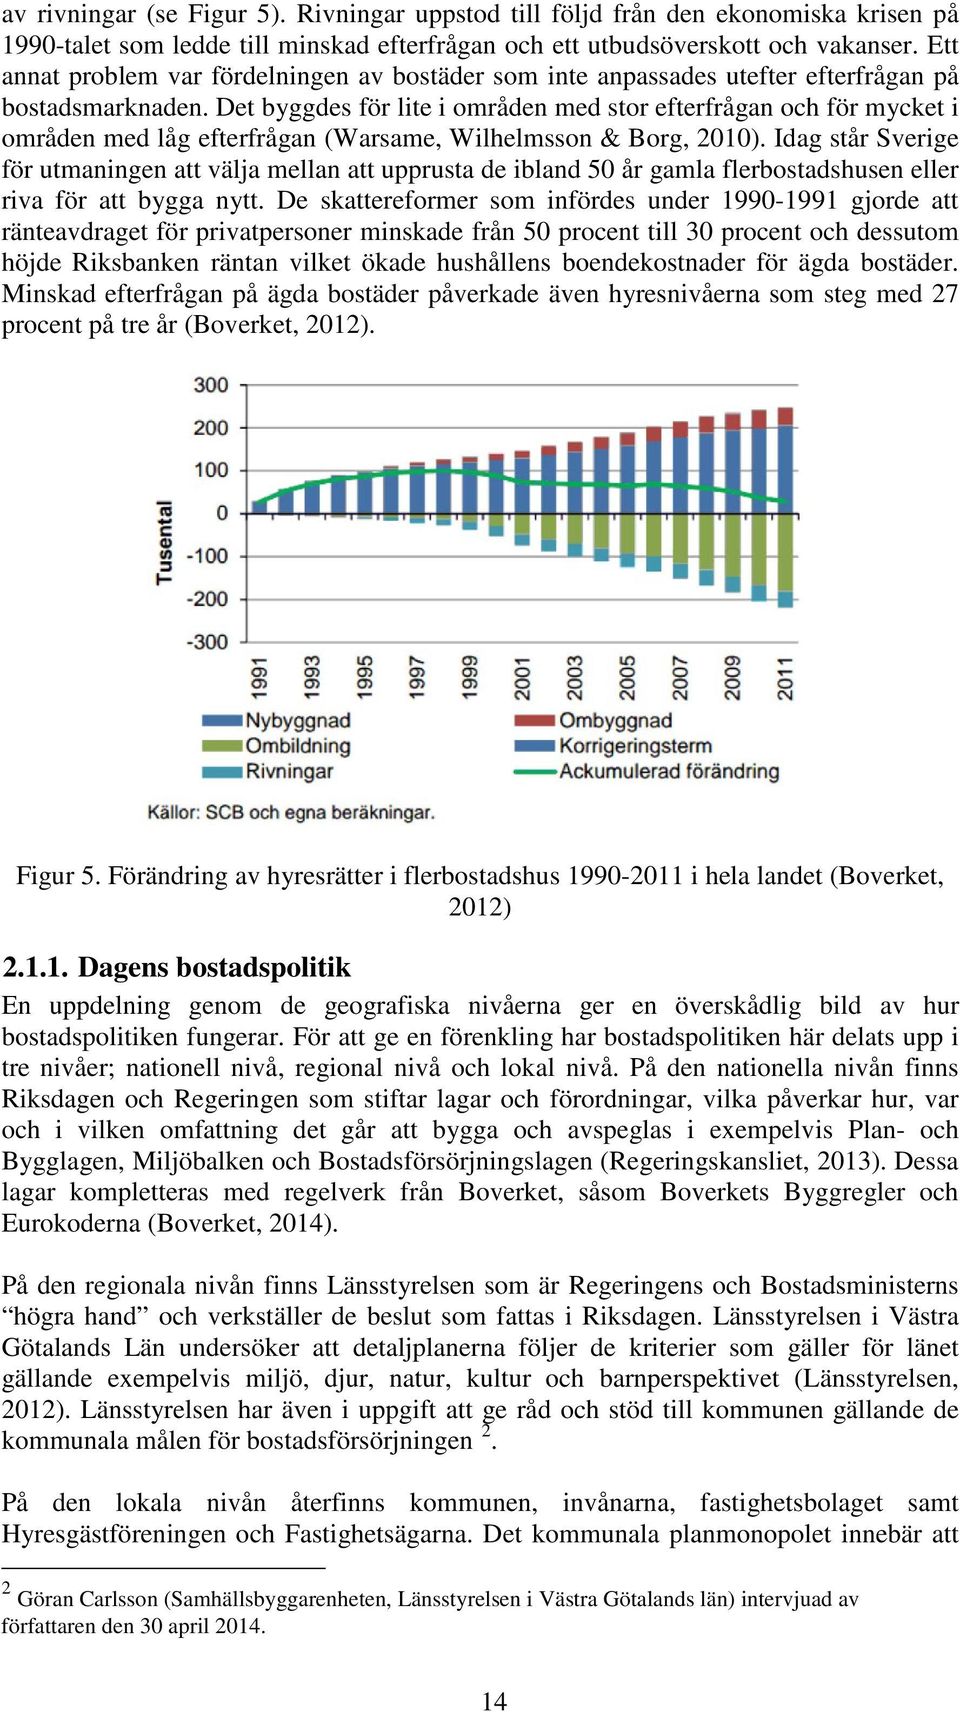 Det byggdes för lite i områden med stor efterfrågan och för mycket i områden med låg efterfrågan (Warsame, Wilhelmsson & Borg, 2010).